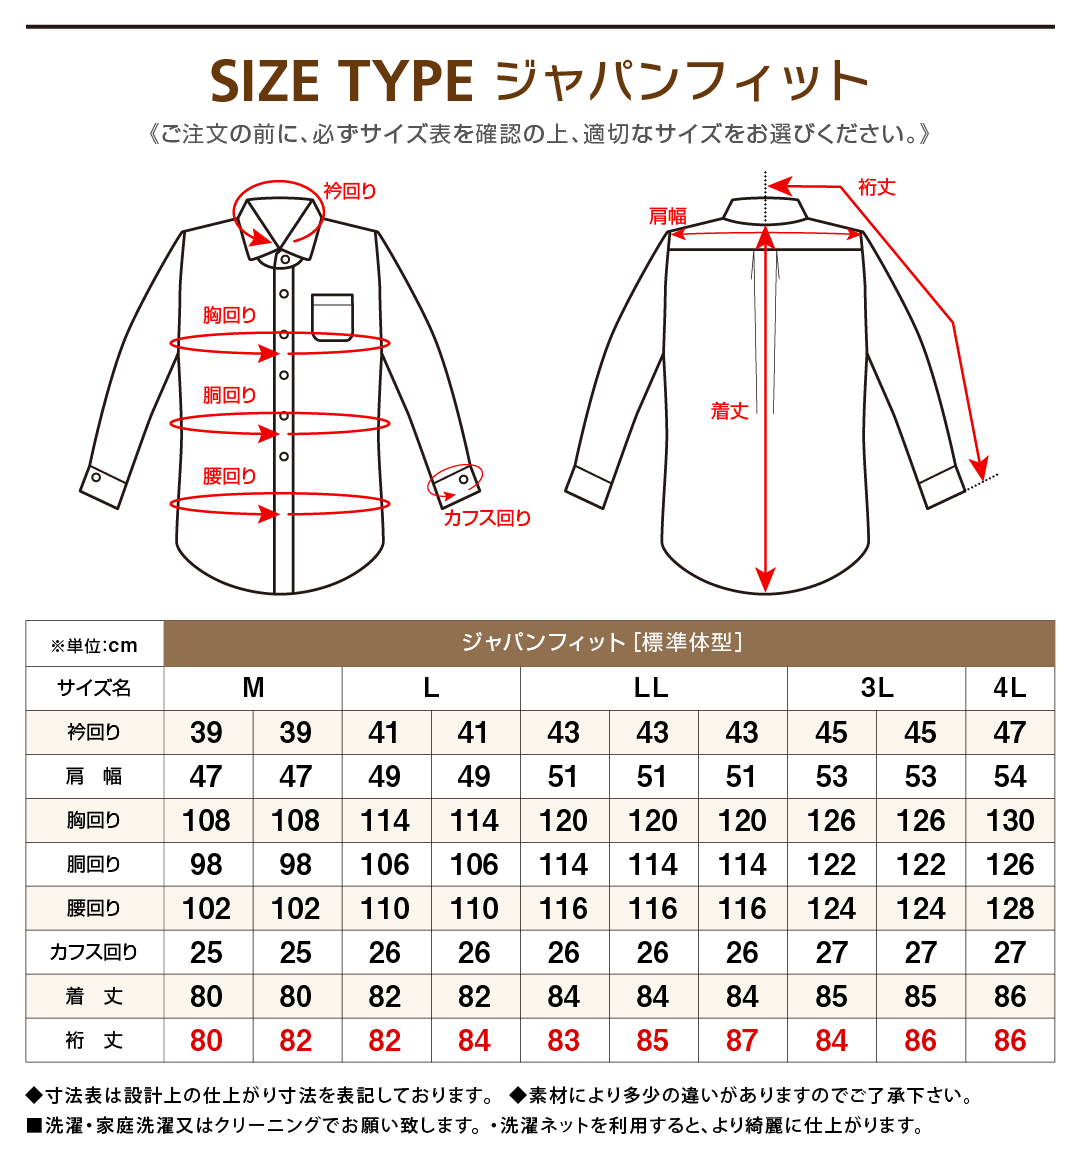 ずんぐりした 病な マーチャンダイザー メンズ ワイシャツ サイズ - gen-style.jp